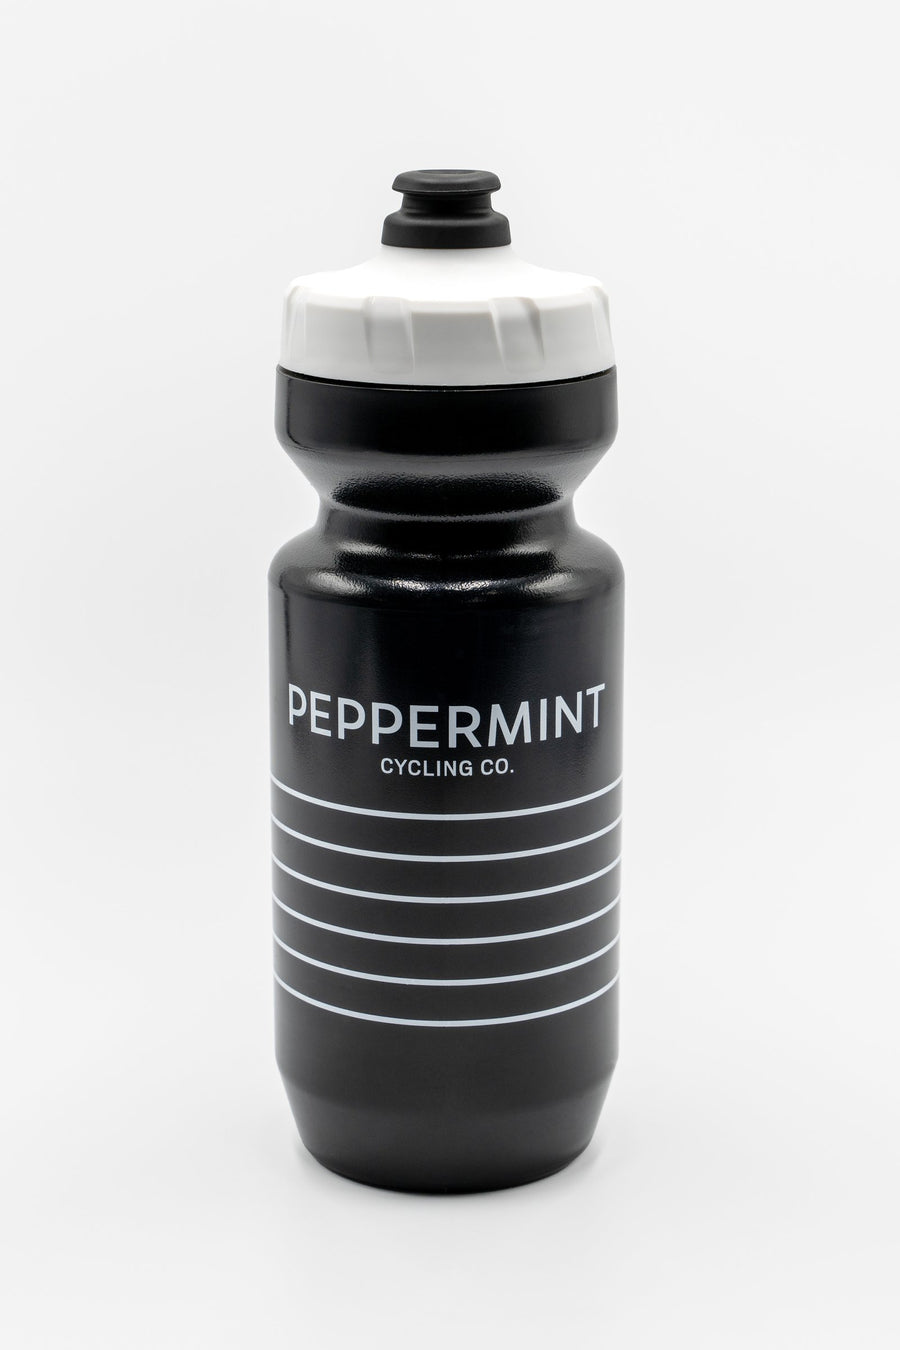 Peppermint bottle